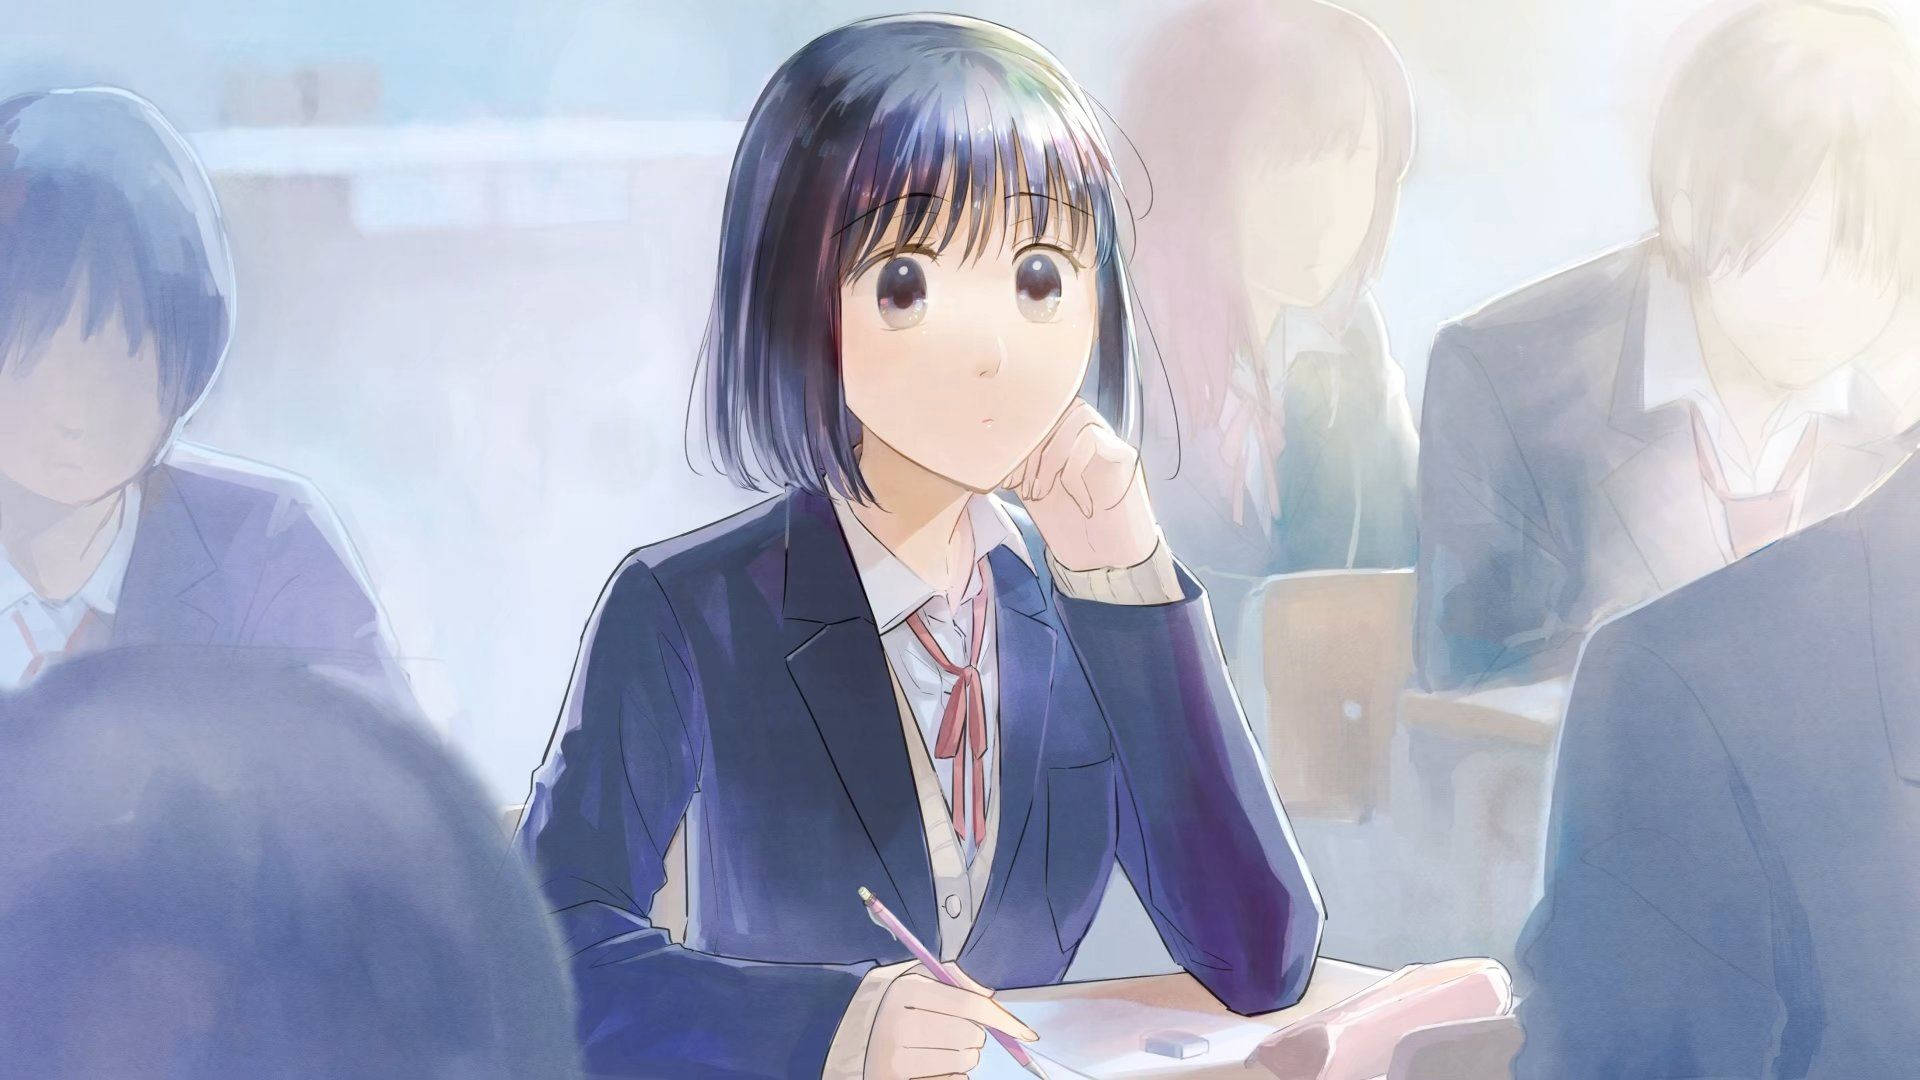 Koikimo Ichika In Classroom Background